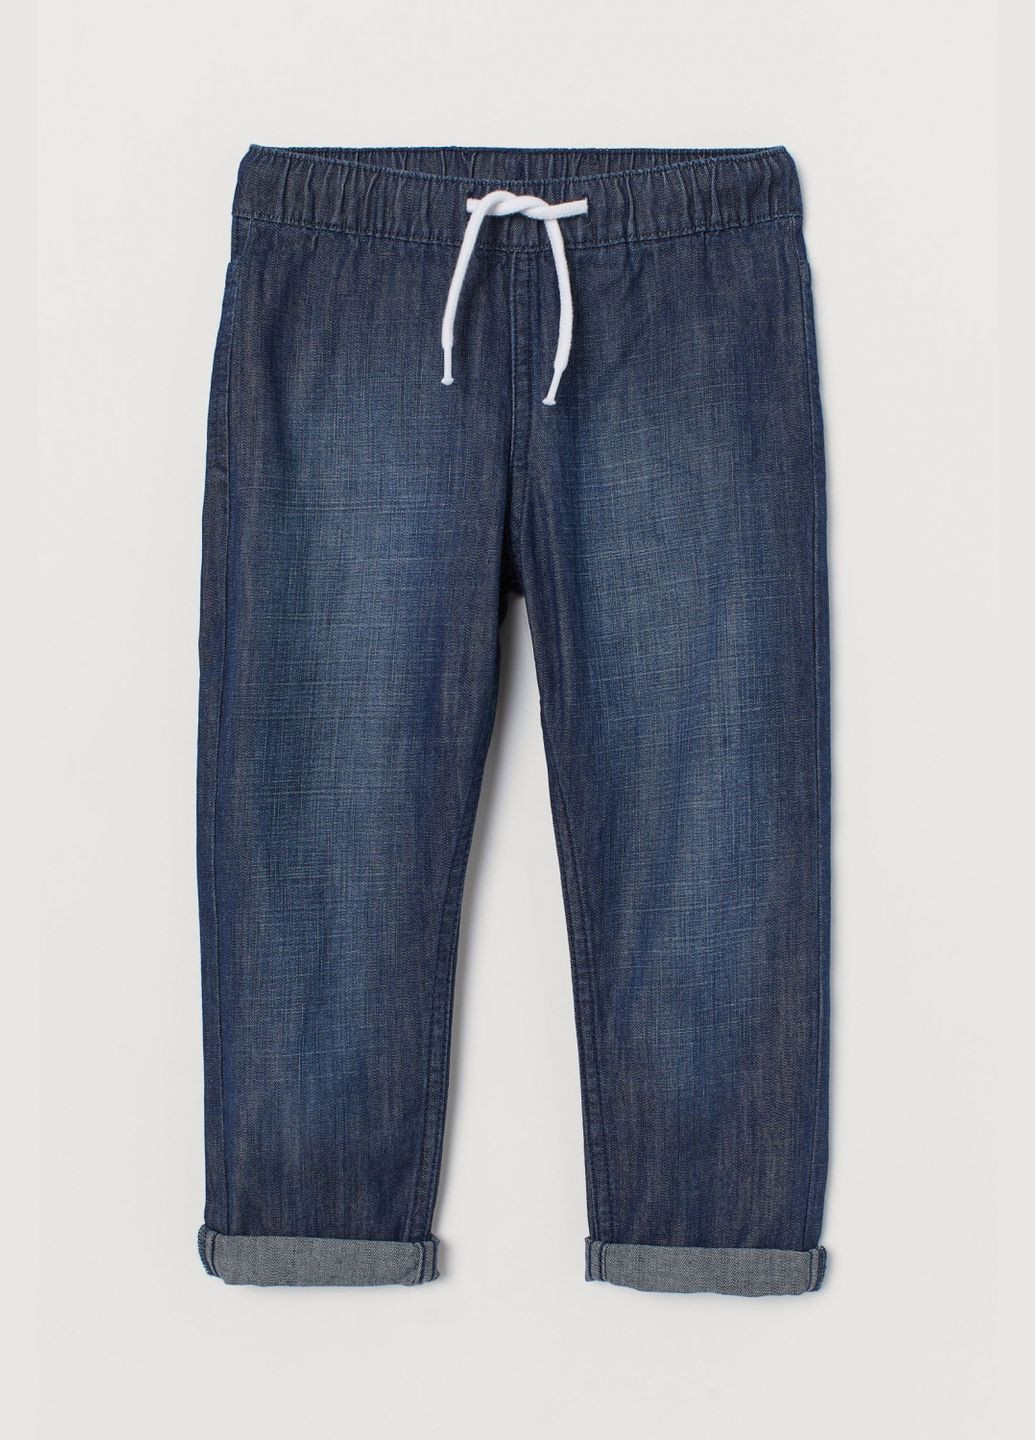 Темно-синие демисезонные джинсы regular fit с эластичной талией для мальчика 0454804-012 H&M